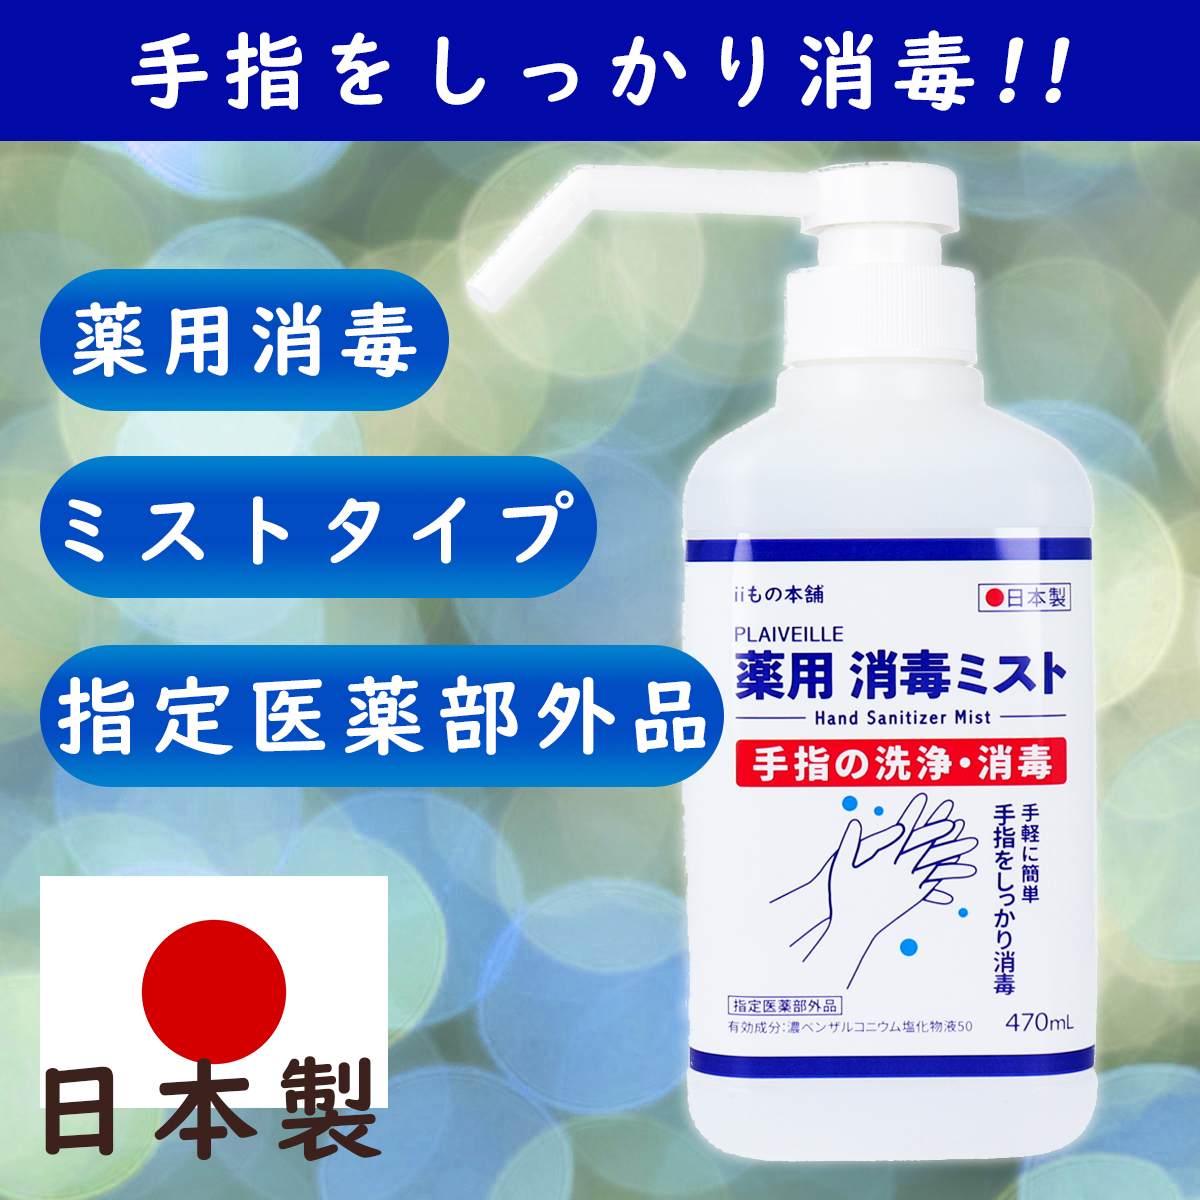 薬用消毒ミストの写真と日本製の指定医薬部外品である旨を記載したバナー画像